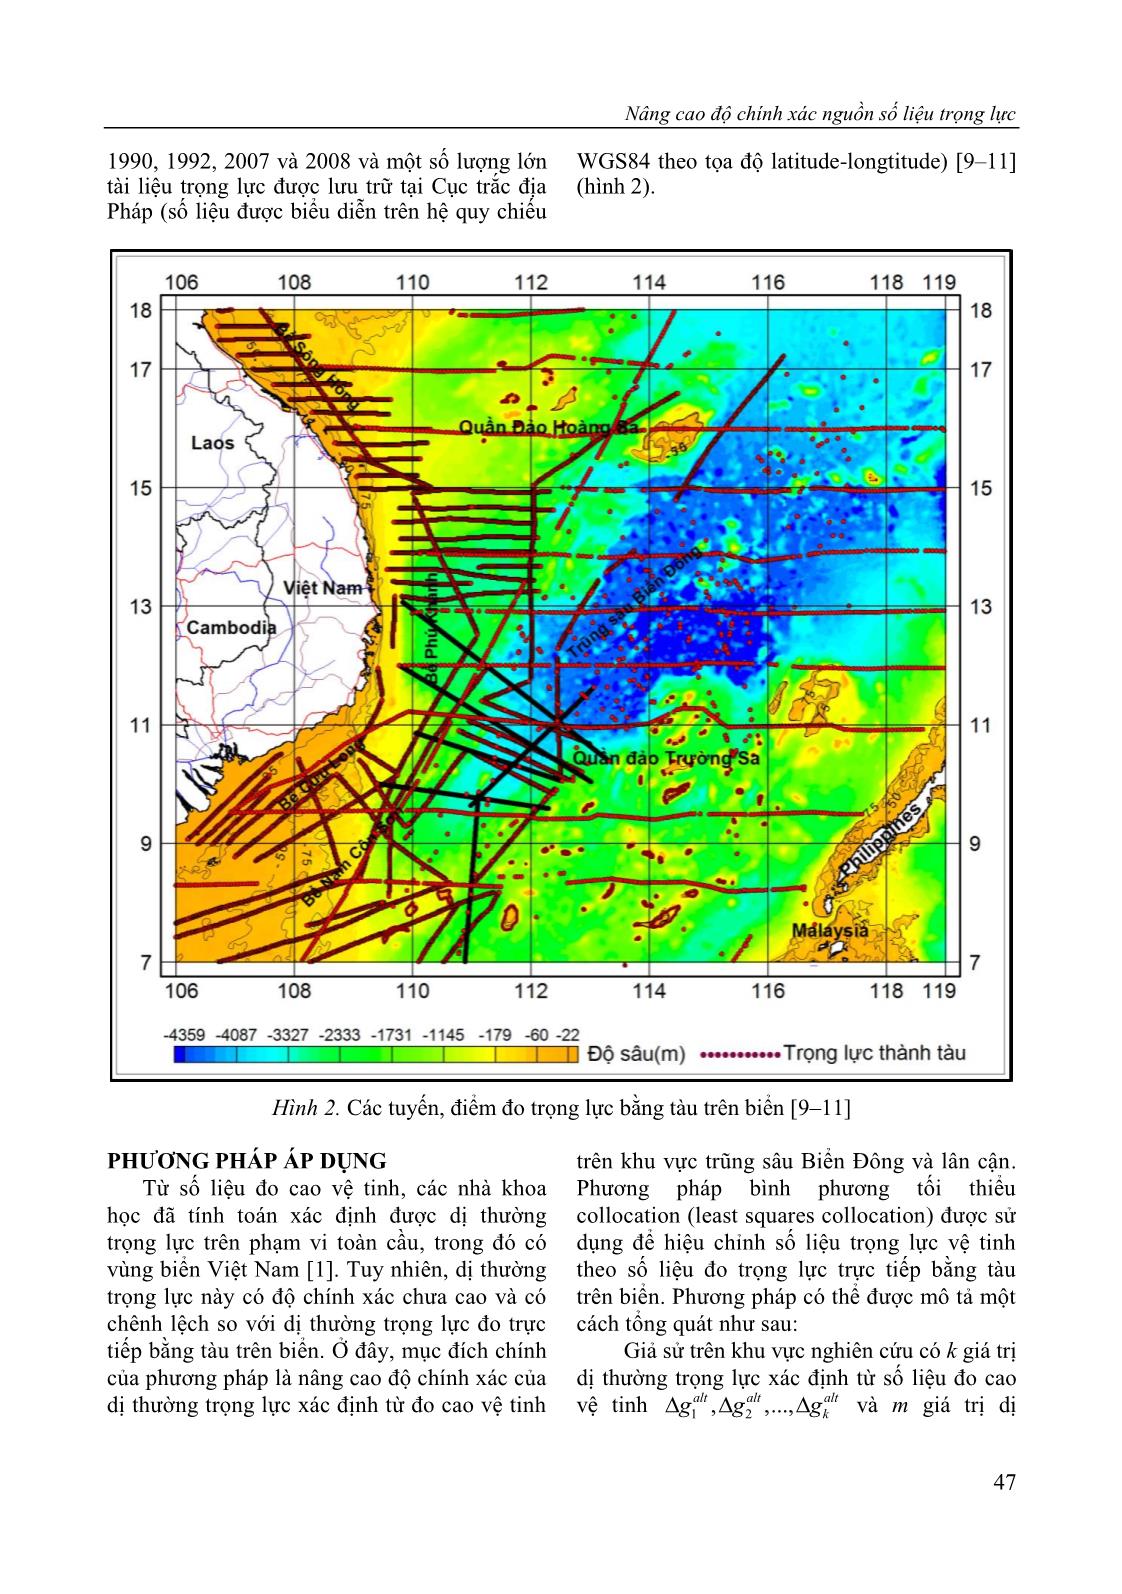 Nâng cao độ chính xác nguồn số liệu trọng lực trên khu vực trũng sâu Biển Đông và lân cận bằng phép tích hợp số liệu vệ tinh và số liệu đo trực tiếp trang 5